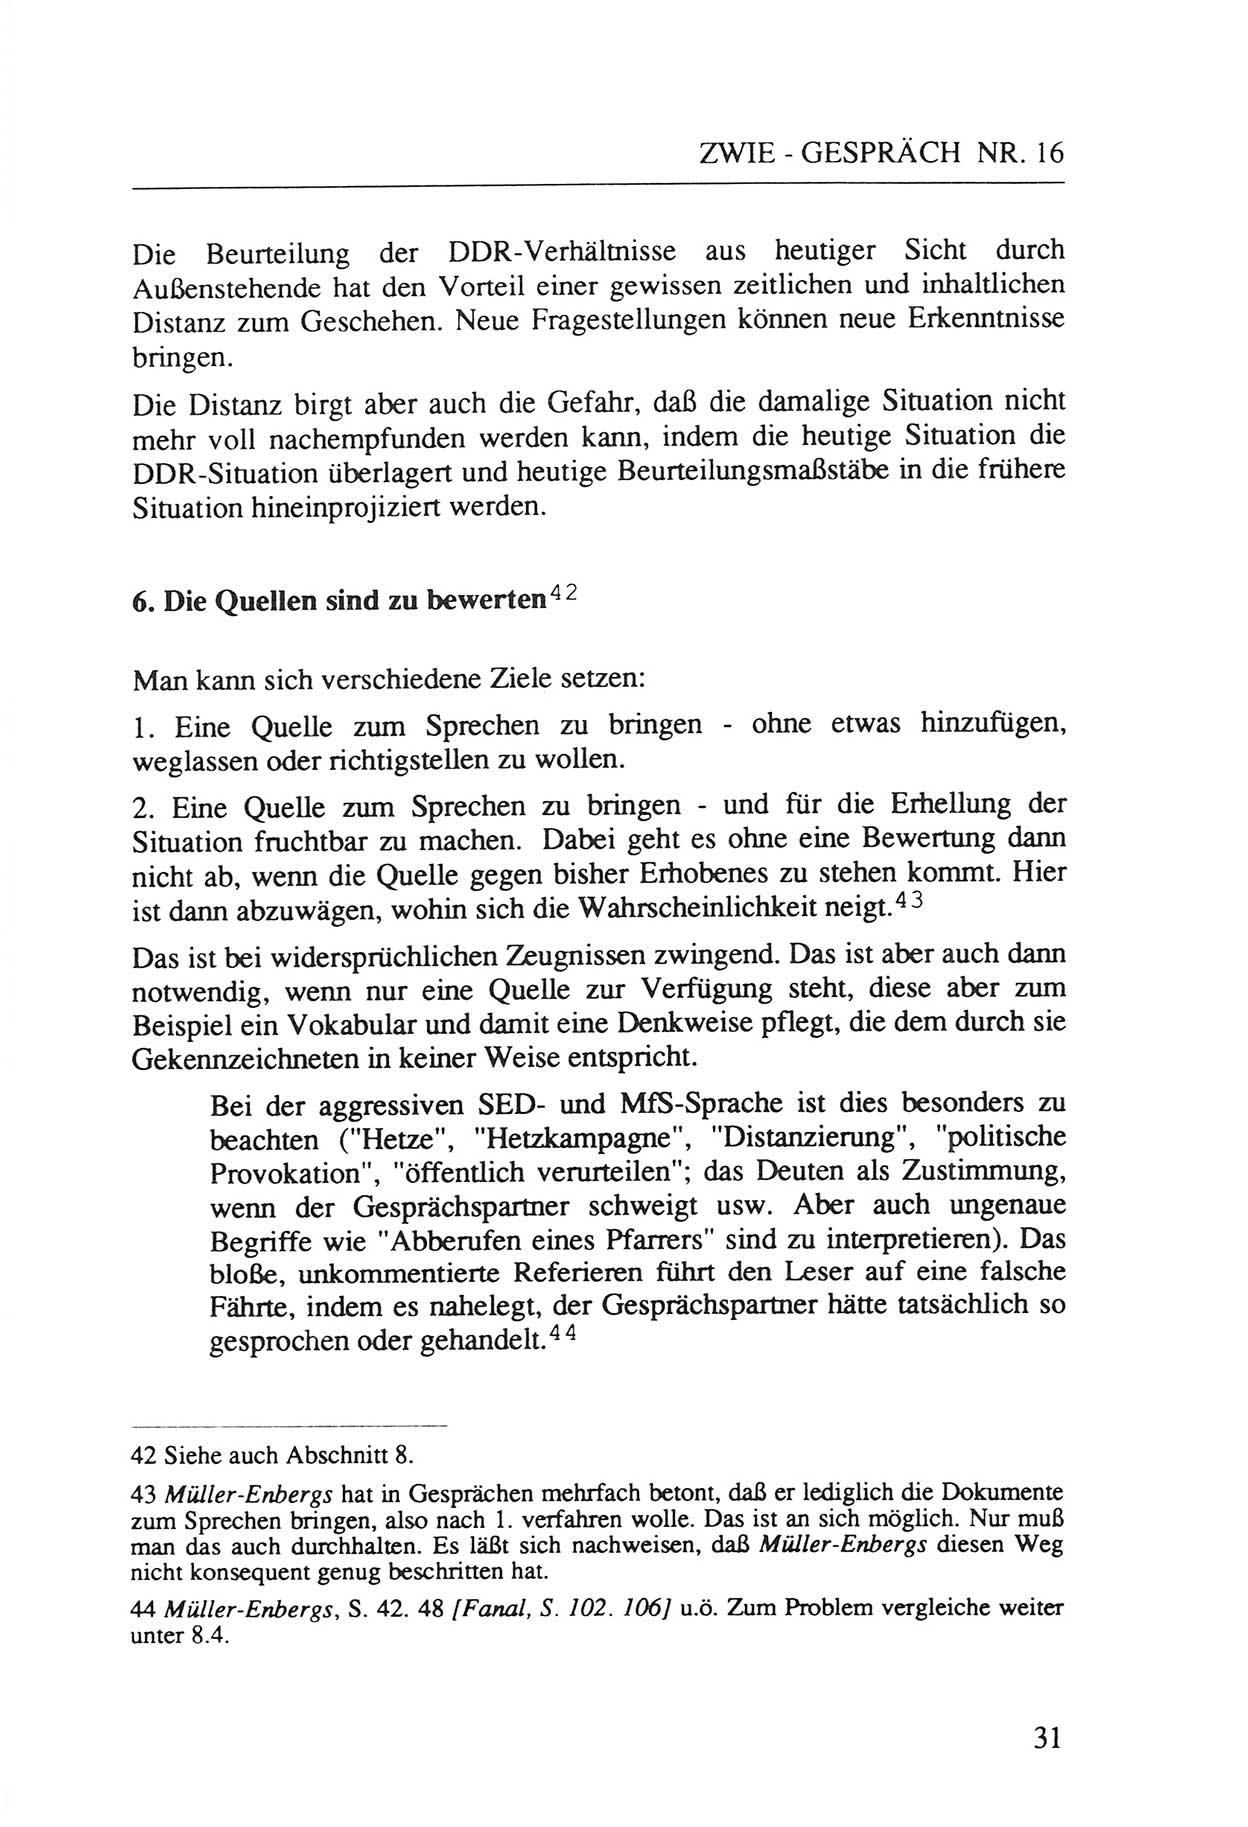 Zwie-Gespräch, Beiträge zur Aufarbeitung der Staatssicherheits-Vergangenheit [Deutsche Demokratische Republik (DDR)], Ausgabe Nr. 16, Berlin 1993, Seite 31 (Zwie-Gespr. Ausg. 16 1993, S. 31)